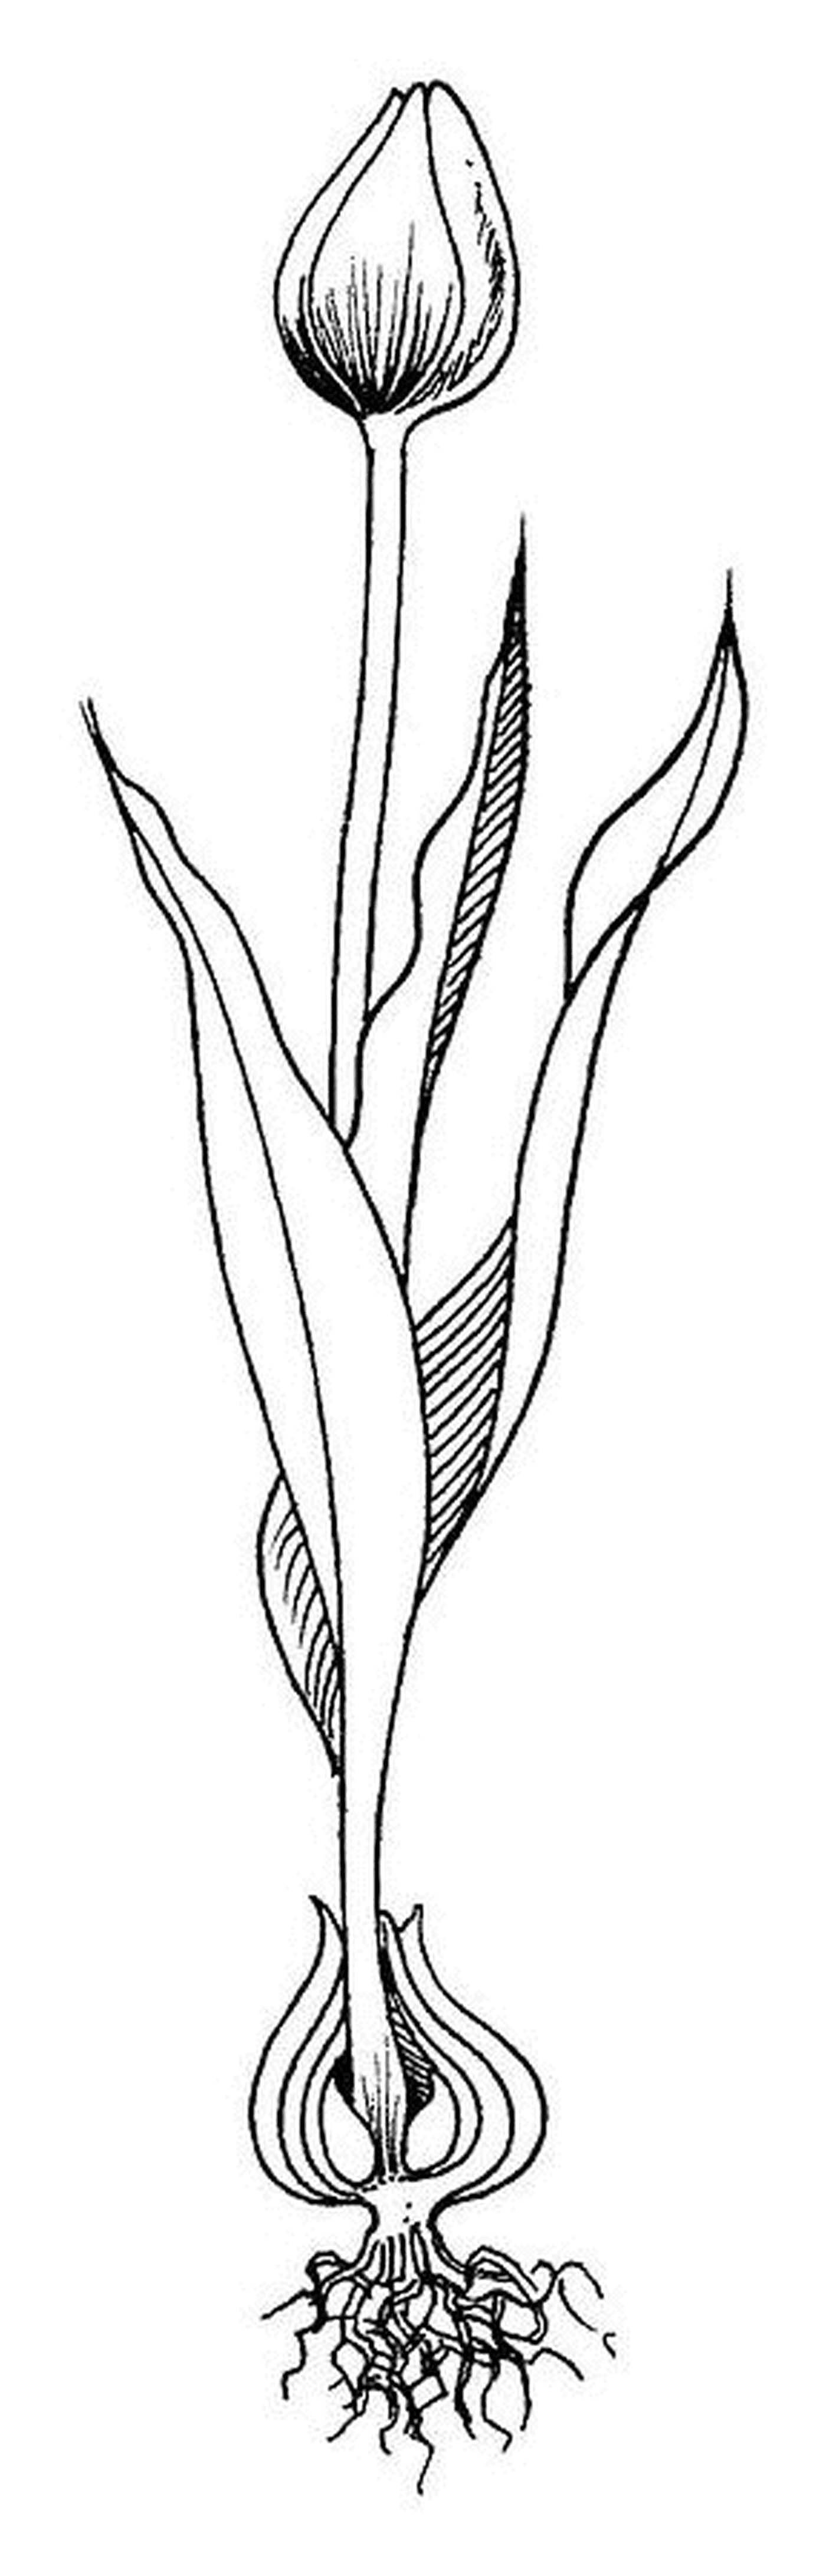   Une tulipe avec sa racine fermée sur une ligne 